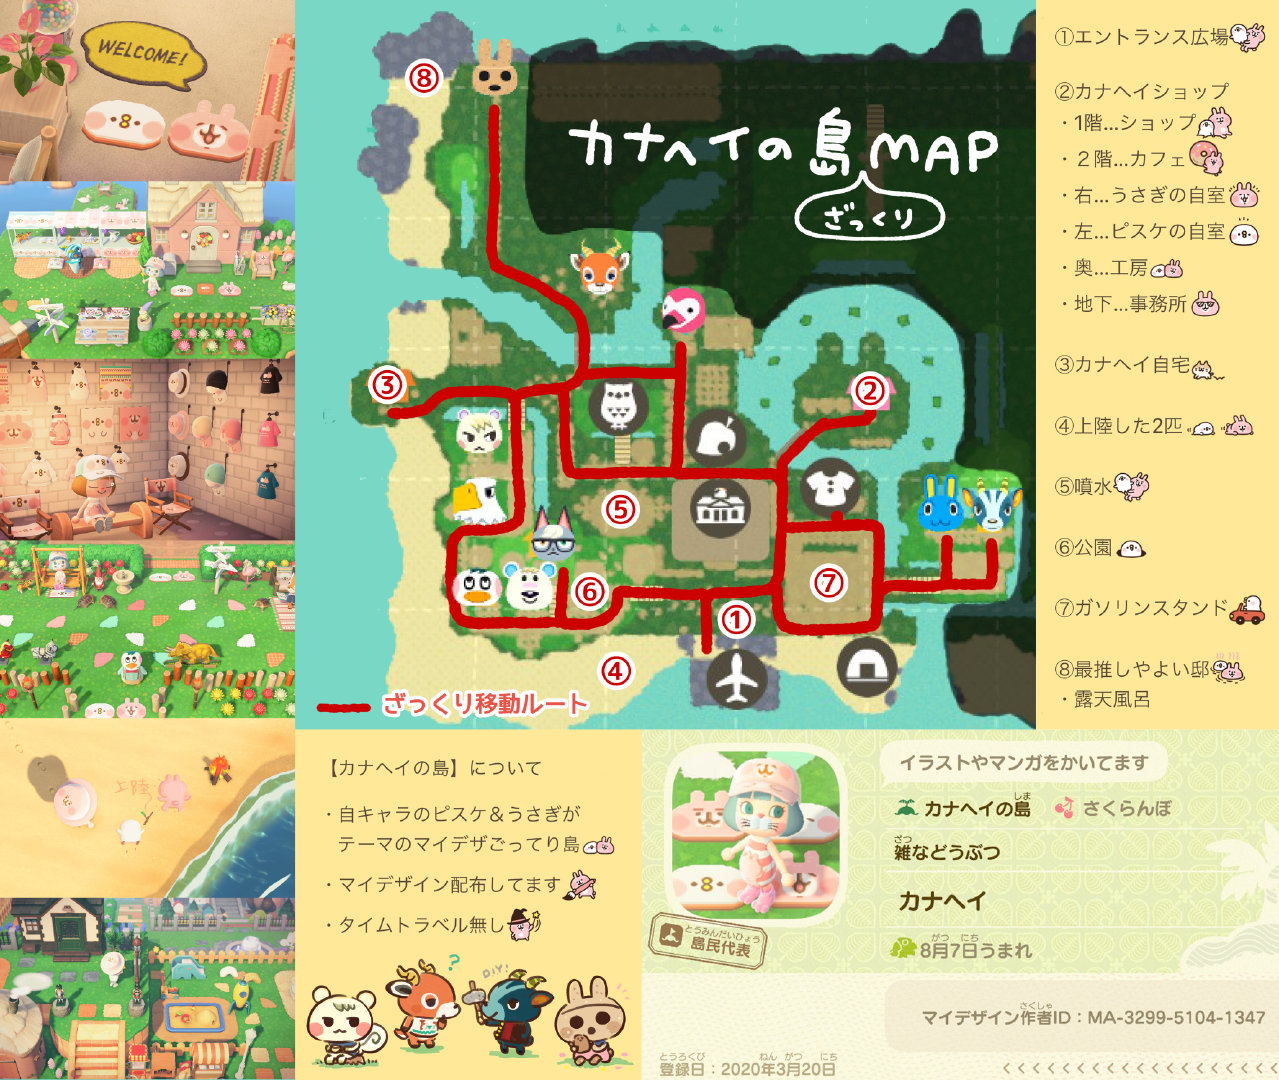 知名插画师kanahei分享了自己 集合啦 动物森友会 的梦境代码 并制作了岛屿 来自网易大神圈子 触乐